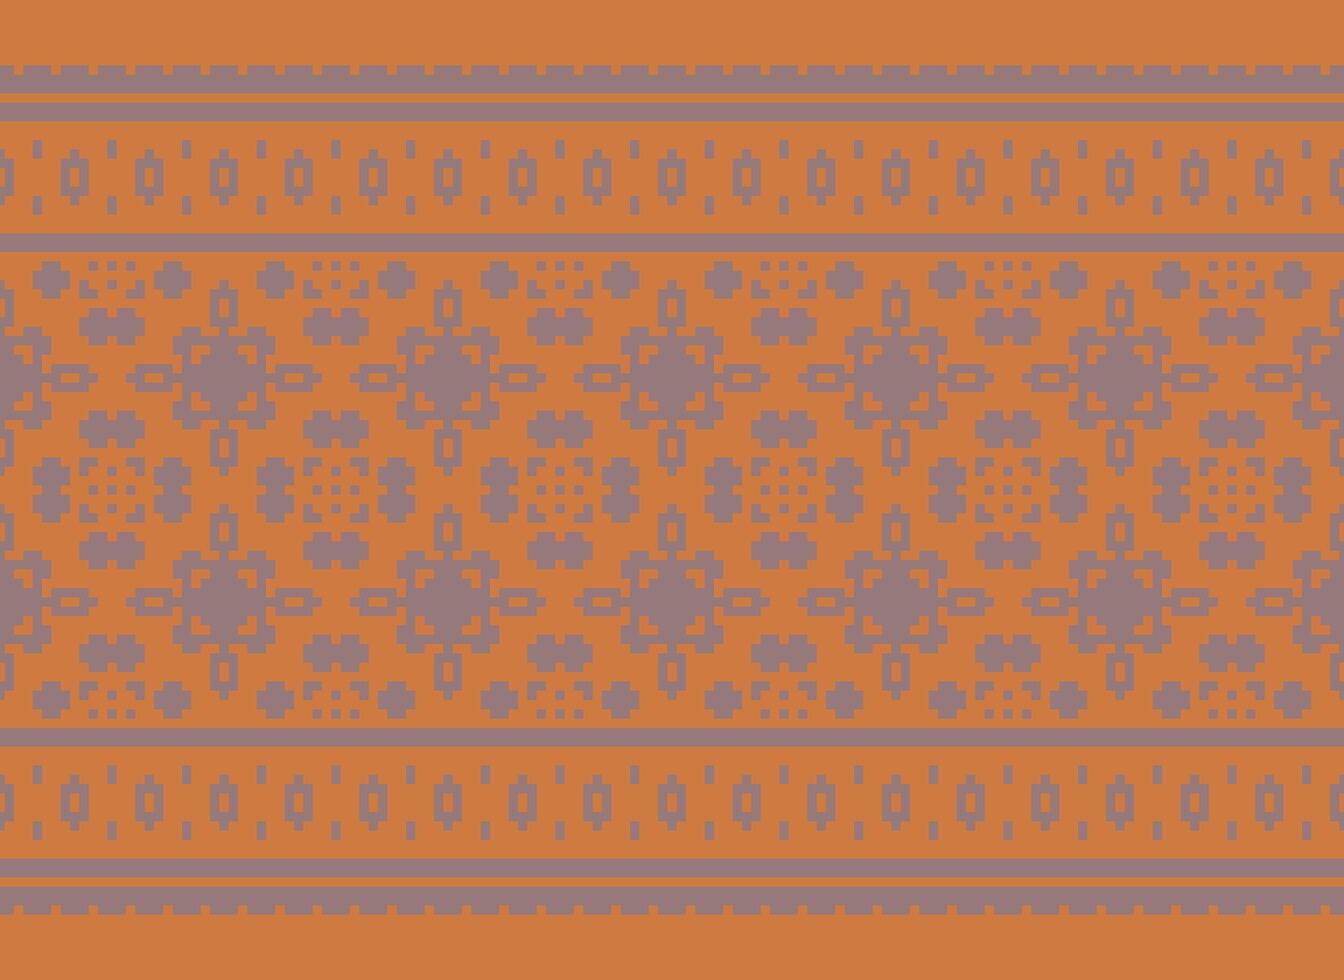 uma lindo geométrico étnico oriental padronizar tradicional em branco plano de fundo. asteca estilo, bordado, resumo, vetor, ilustração.design para textura, tecido, roupas, embrulho, decoração, tapete, impressão. vetor